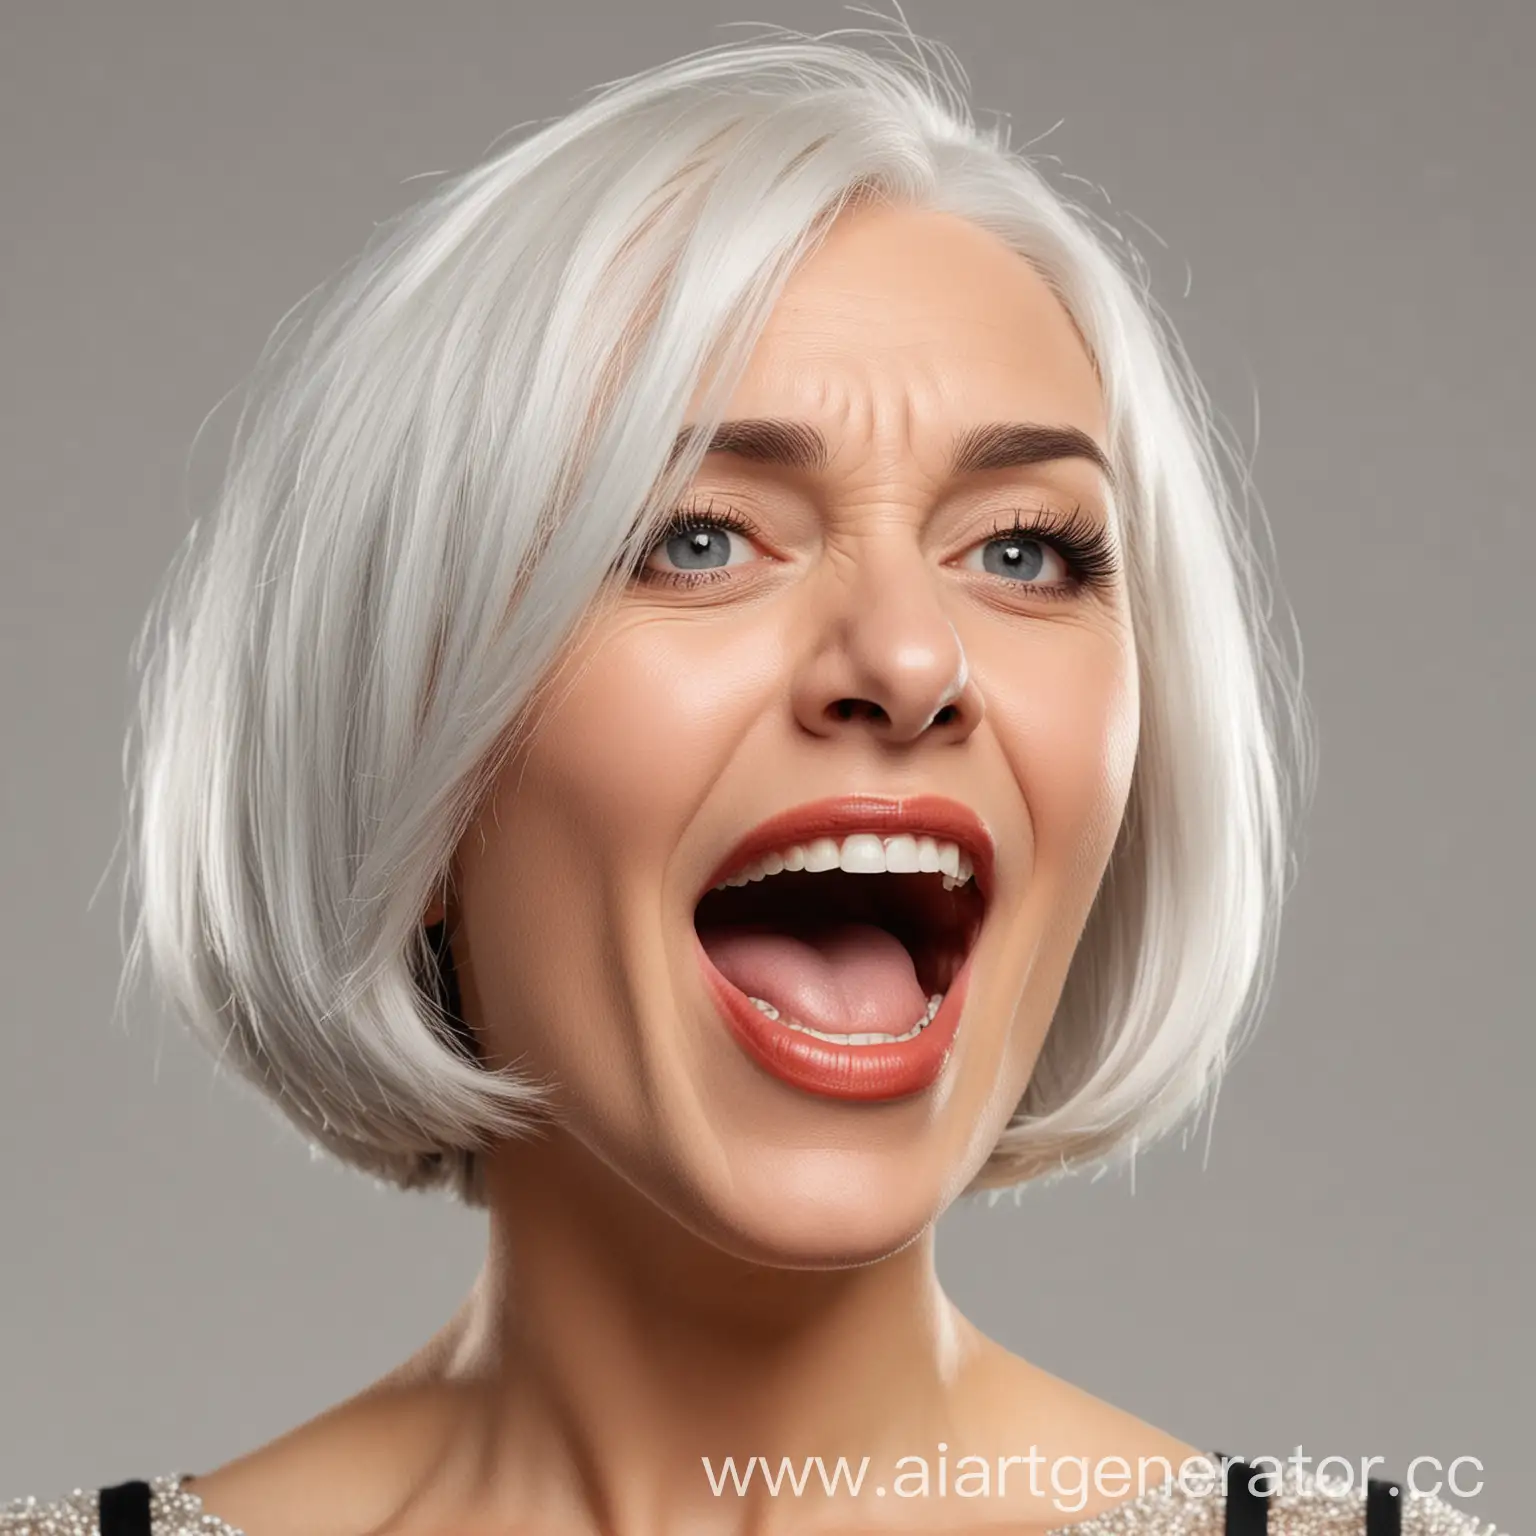 Женщина с белыми волосами и прической каре в возрасте 50 лет орет в микрофон